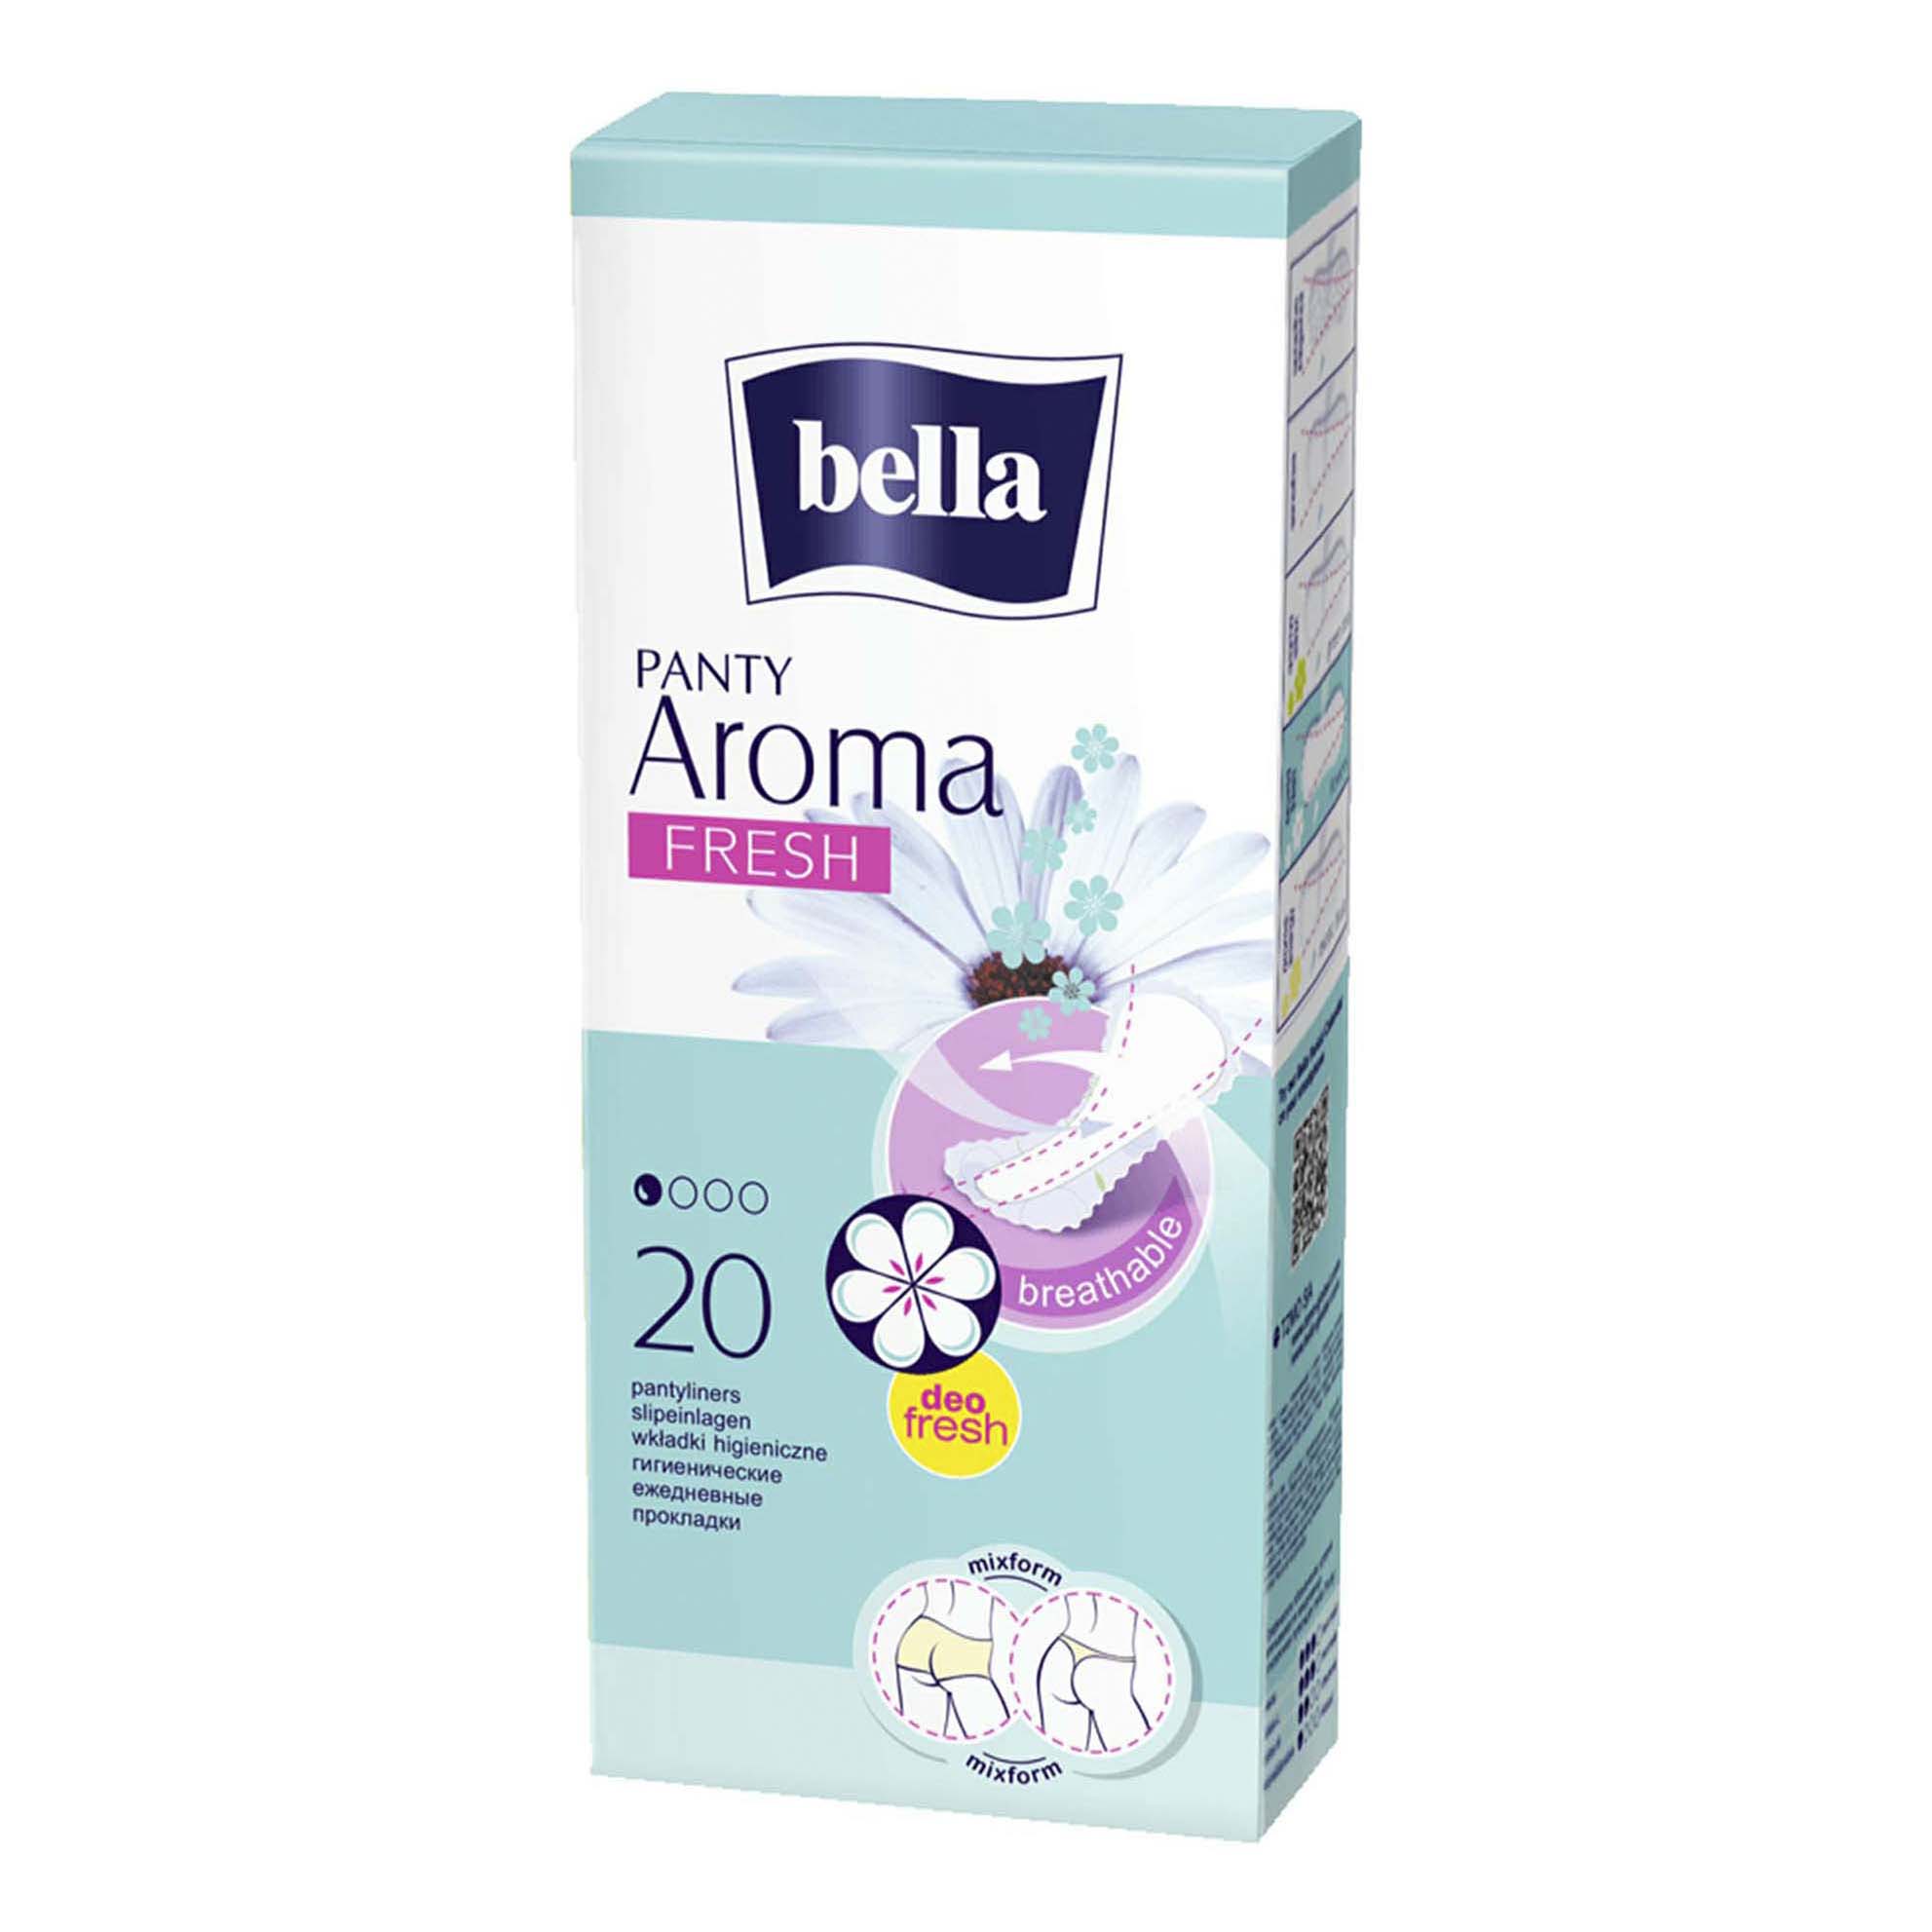 Прокладки Bella Panty aroma fresh ежедневные 20 шт прокладки bella panty aroma fresh ежедневные 60шт 2 уп